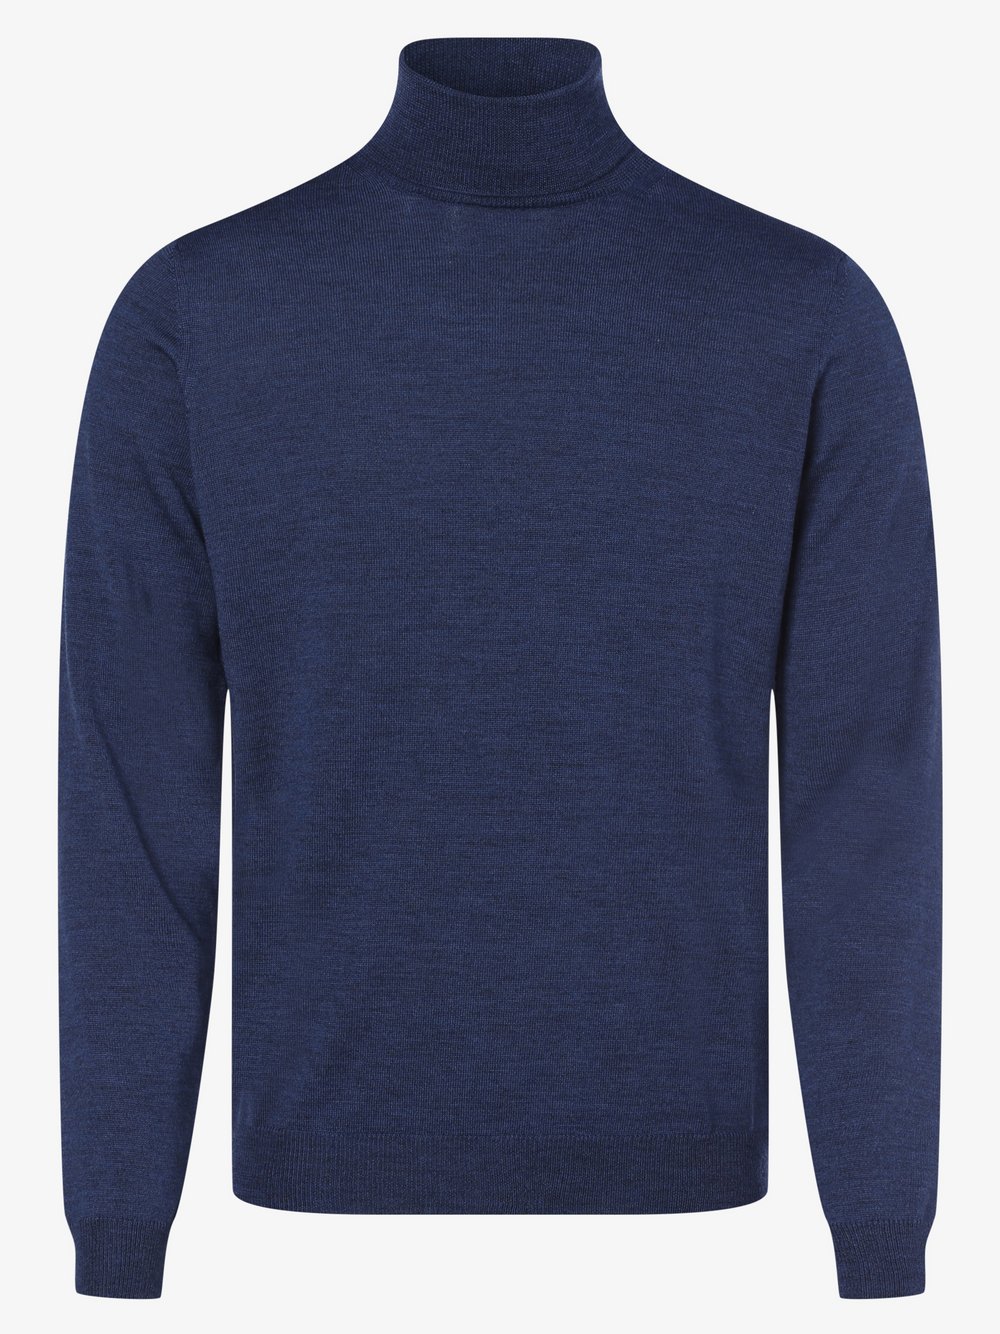 Finshley & Harding - Męski sweter z wełny merino, niebieski